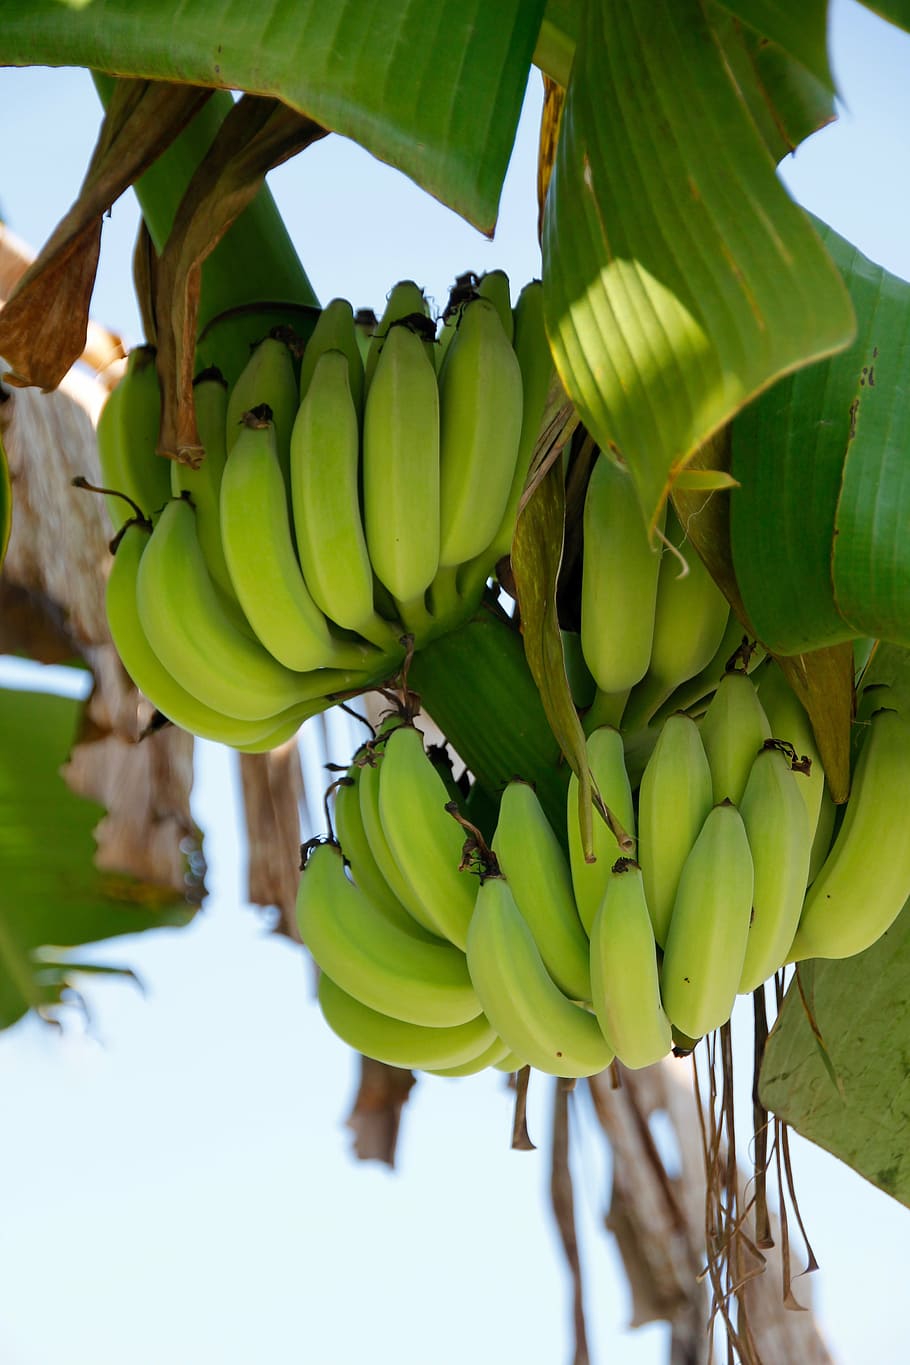 arbusto, planta de plátano, fruta, tallo, árbol de plátano, obstbanane, tropical, arbusto de plátano, plátanos pequeños, hoja de plátano